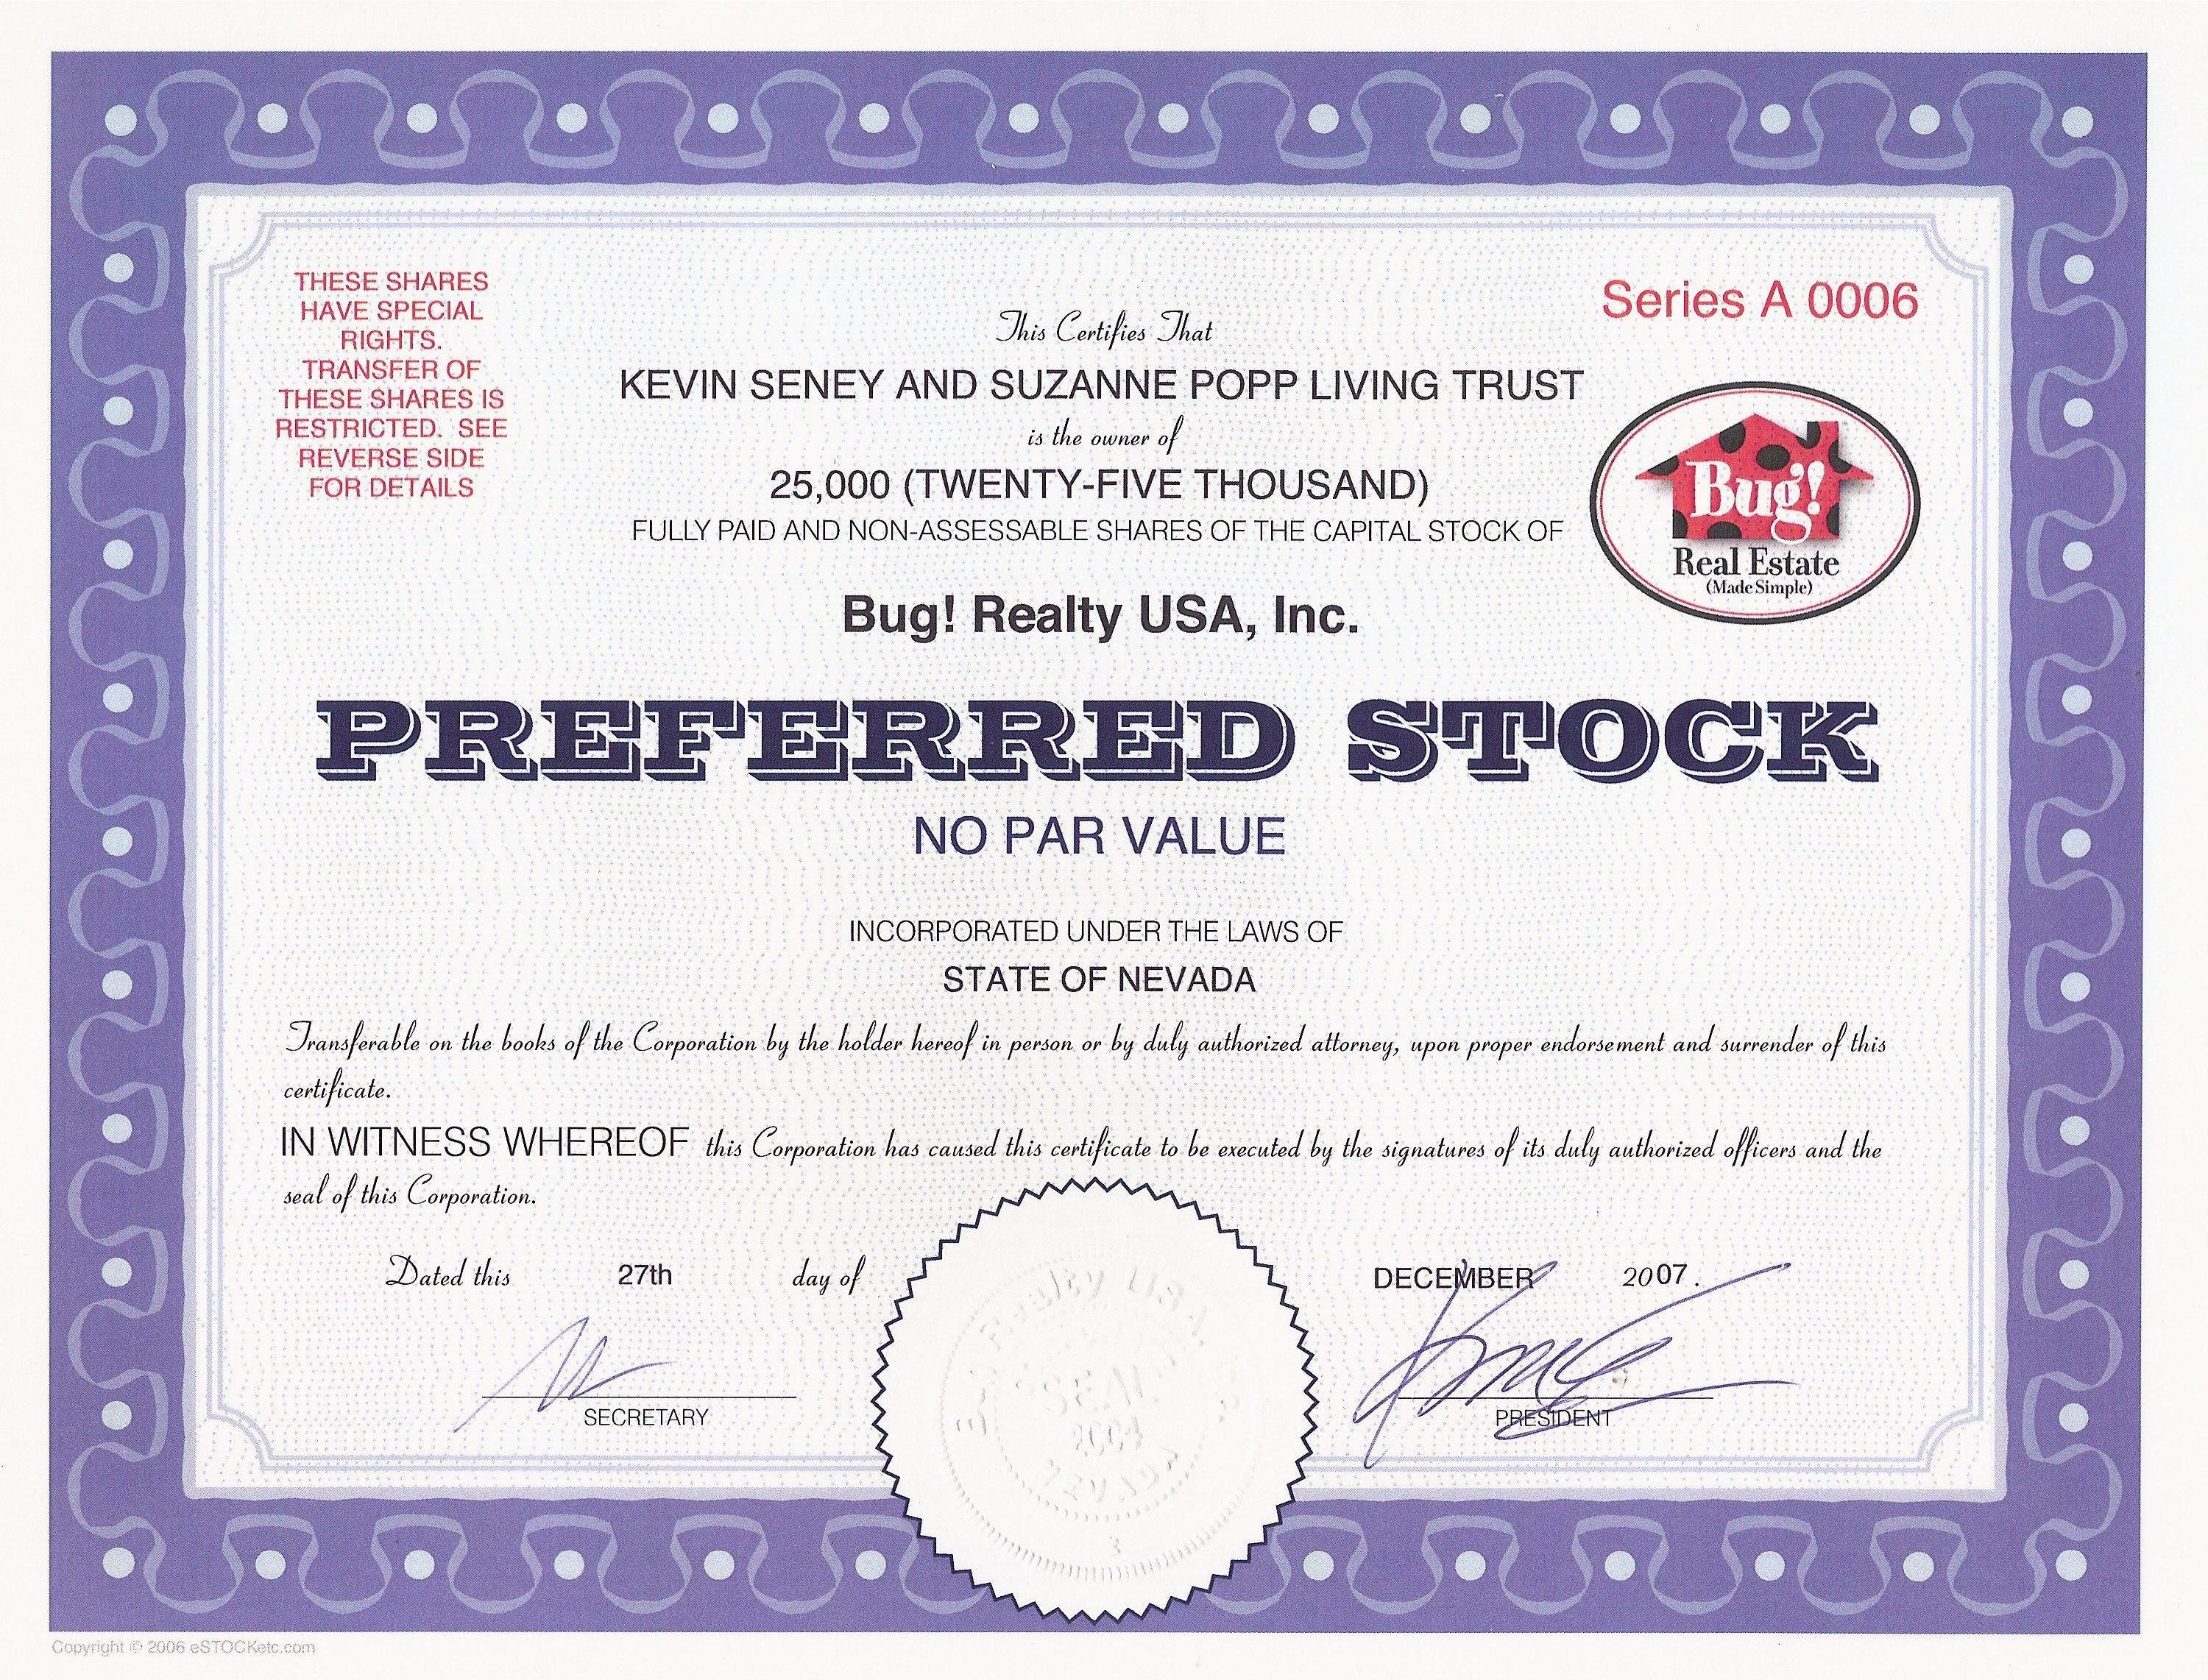 Сертификат привилегированной акции корпорации Bug! Realty USA